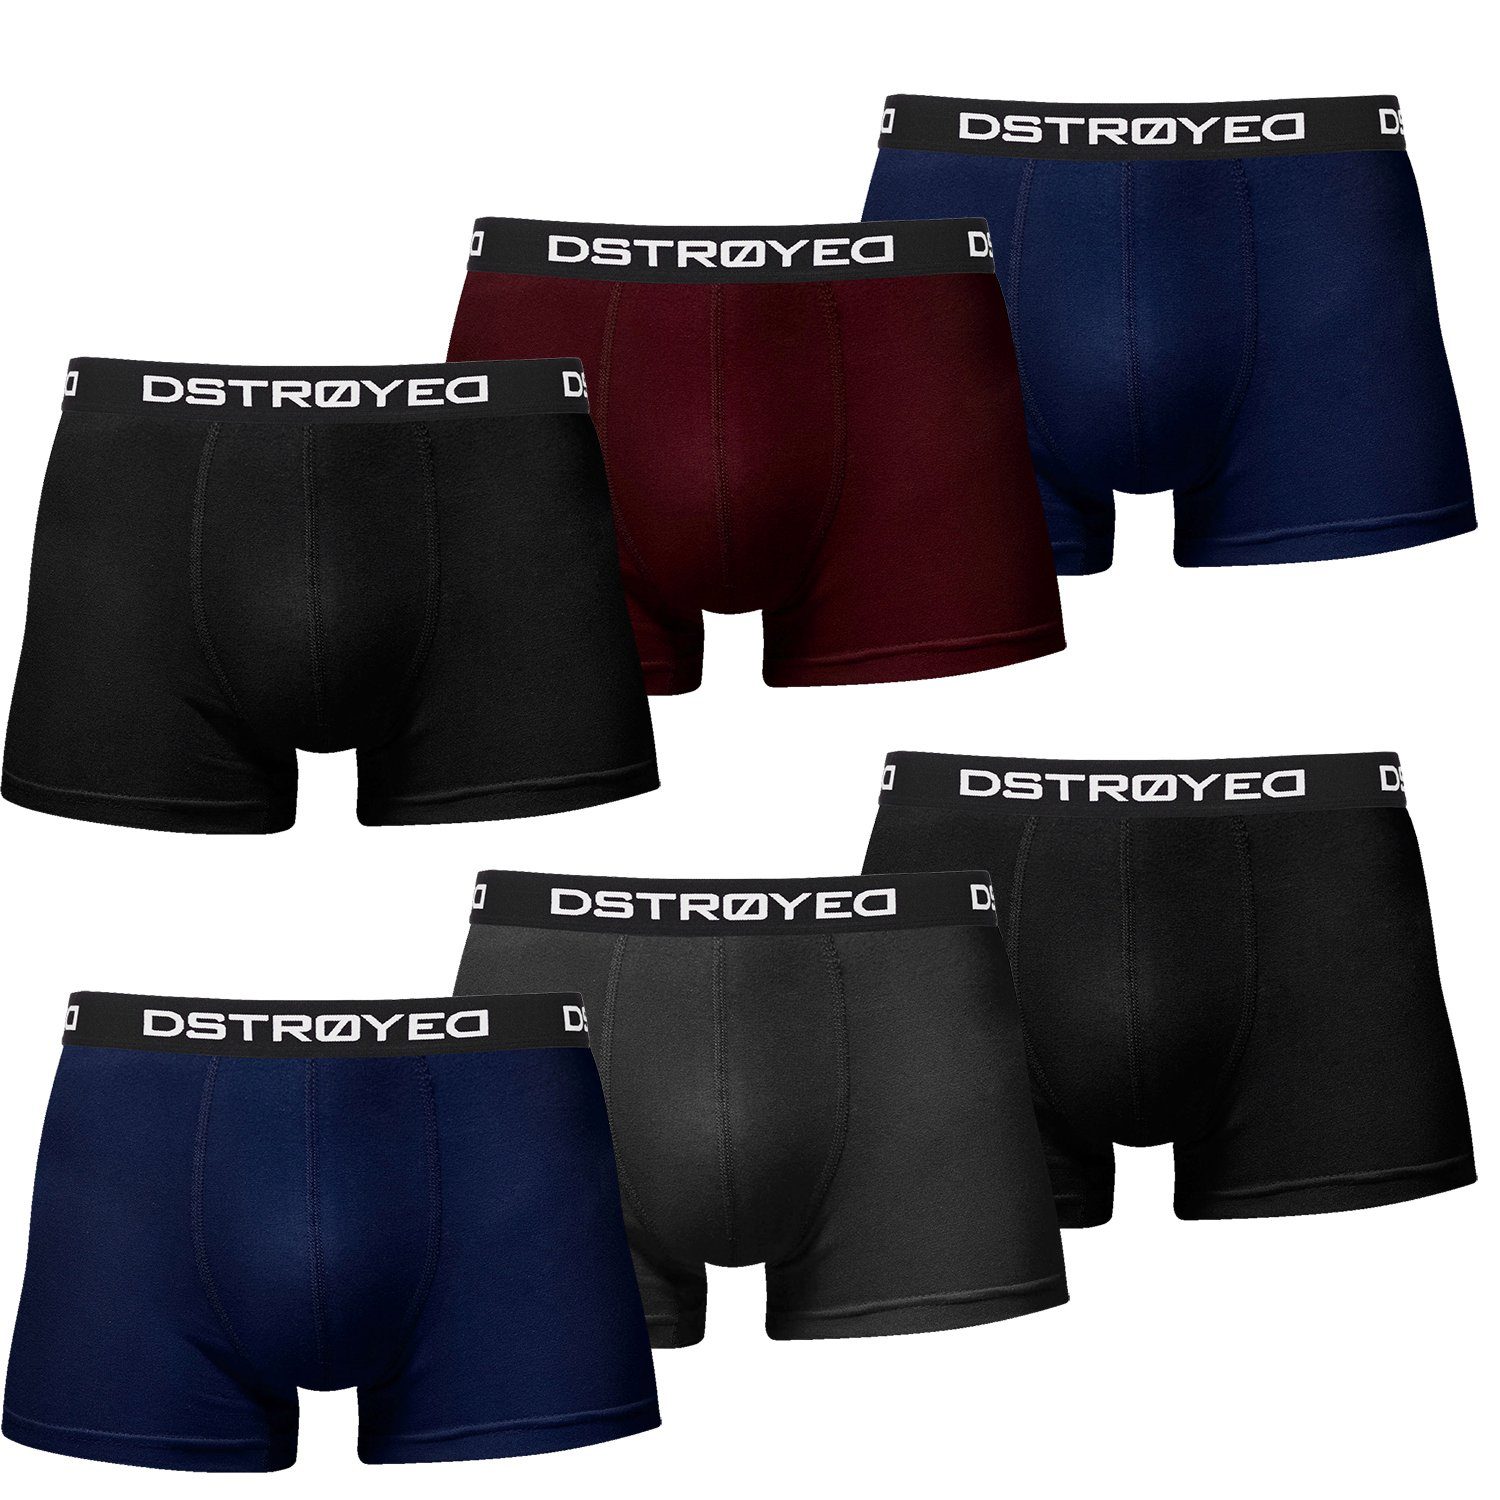 DSTROYED Boxershorts Herren Männer Unterhosen Baumwolle Premium Qualität perfekte Passform (Sparpack, 6er Pack) S - 7XL 606b-mehrfarbig